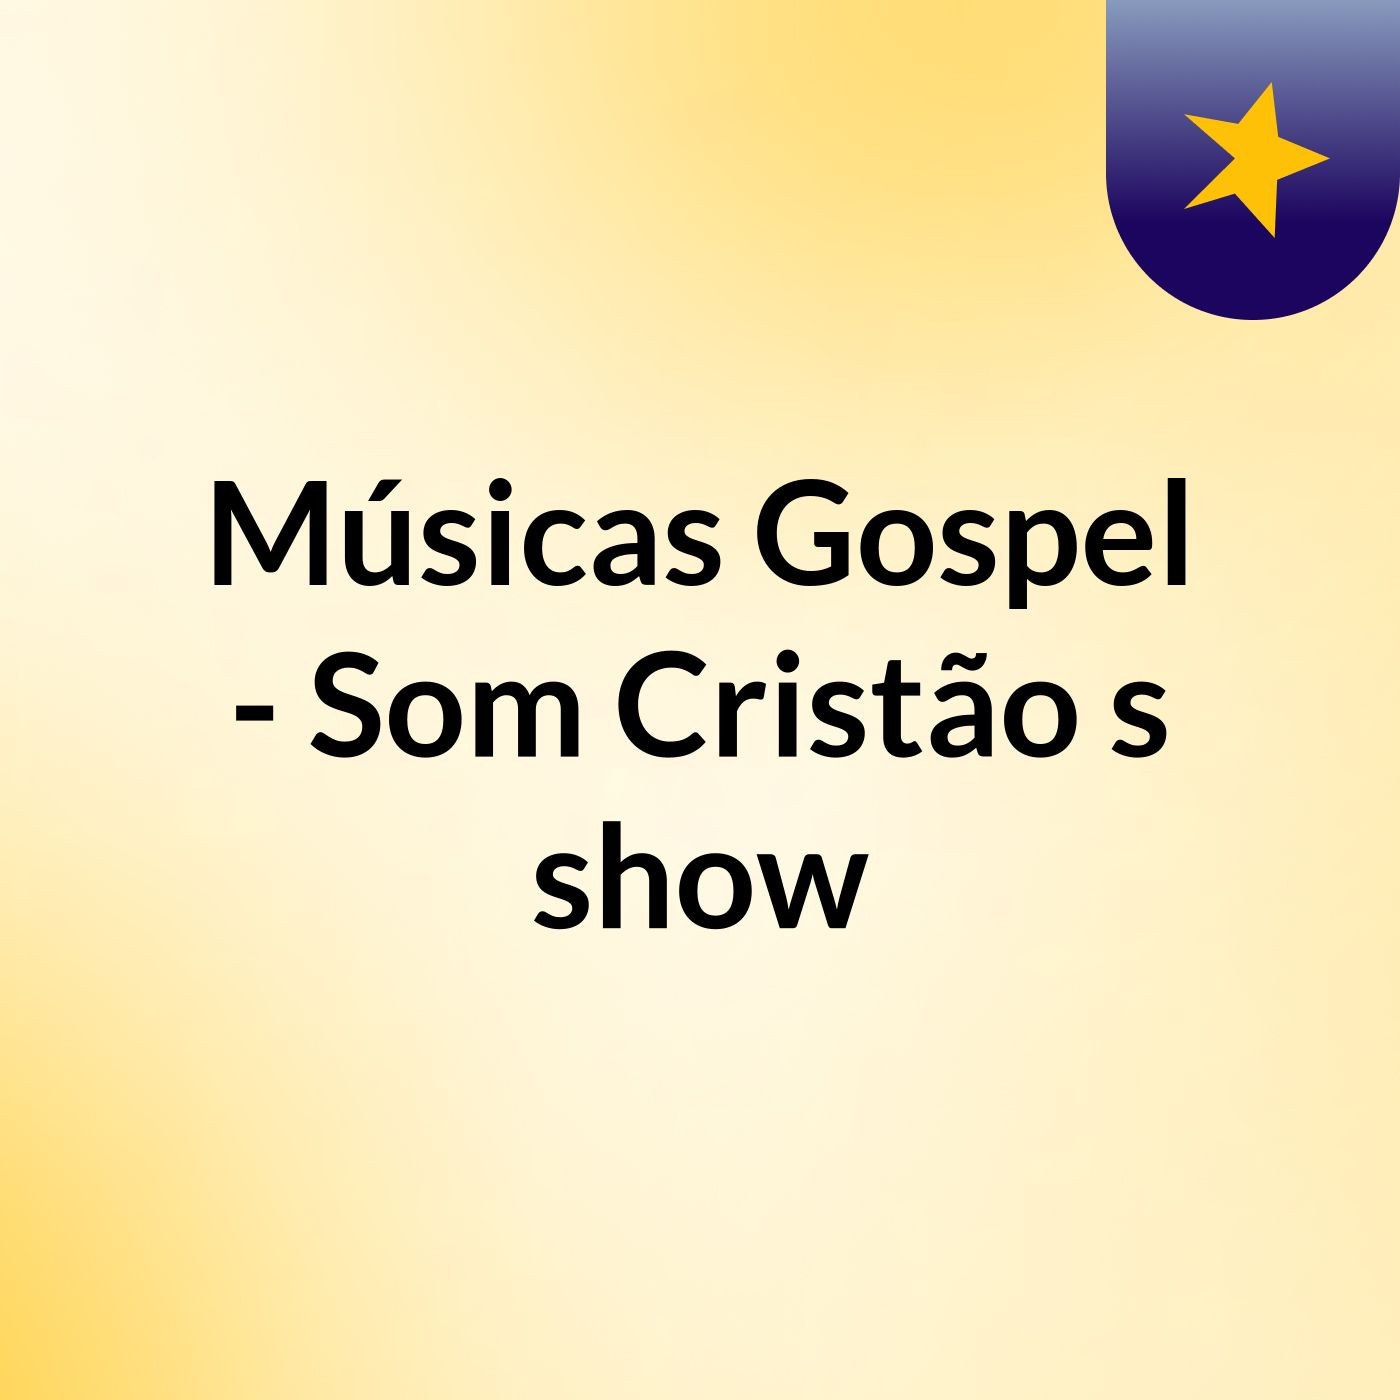 Músicas Gospel - Som Cristão's show